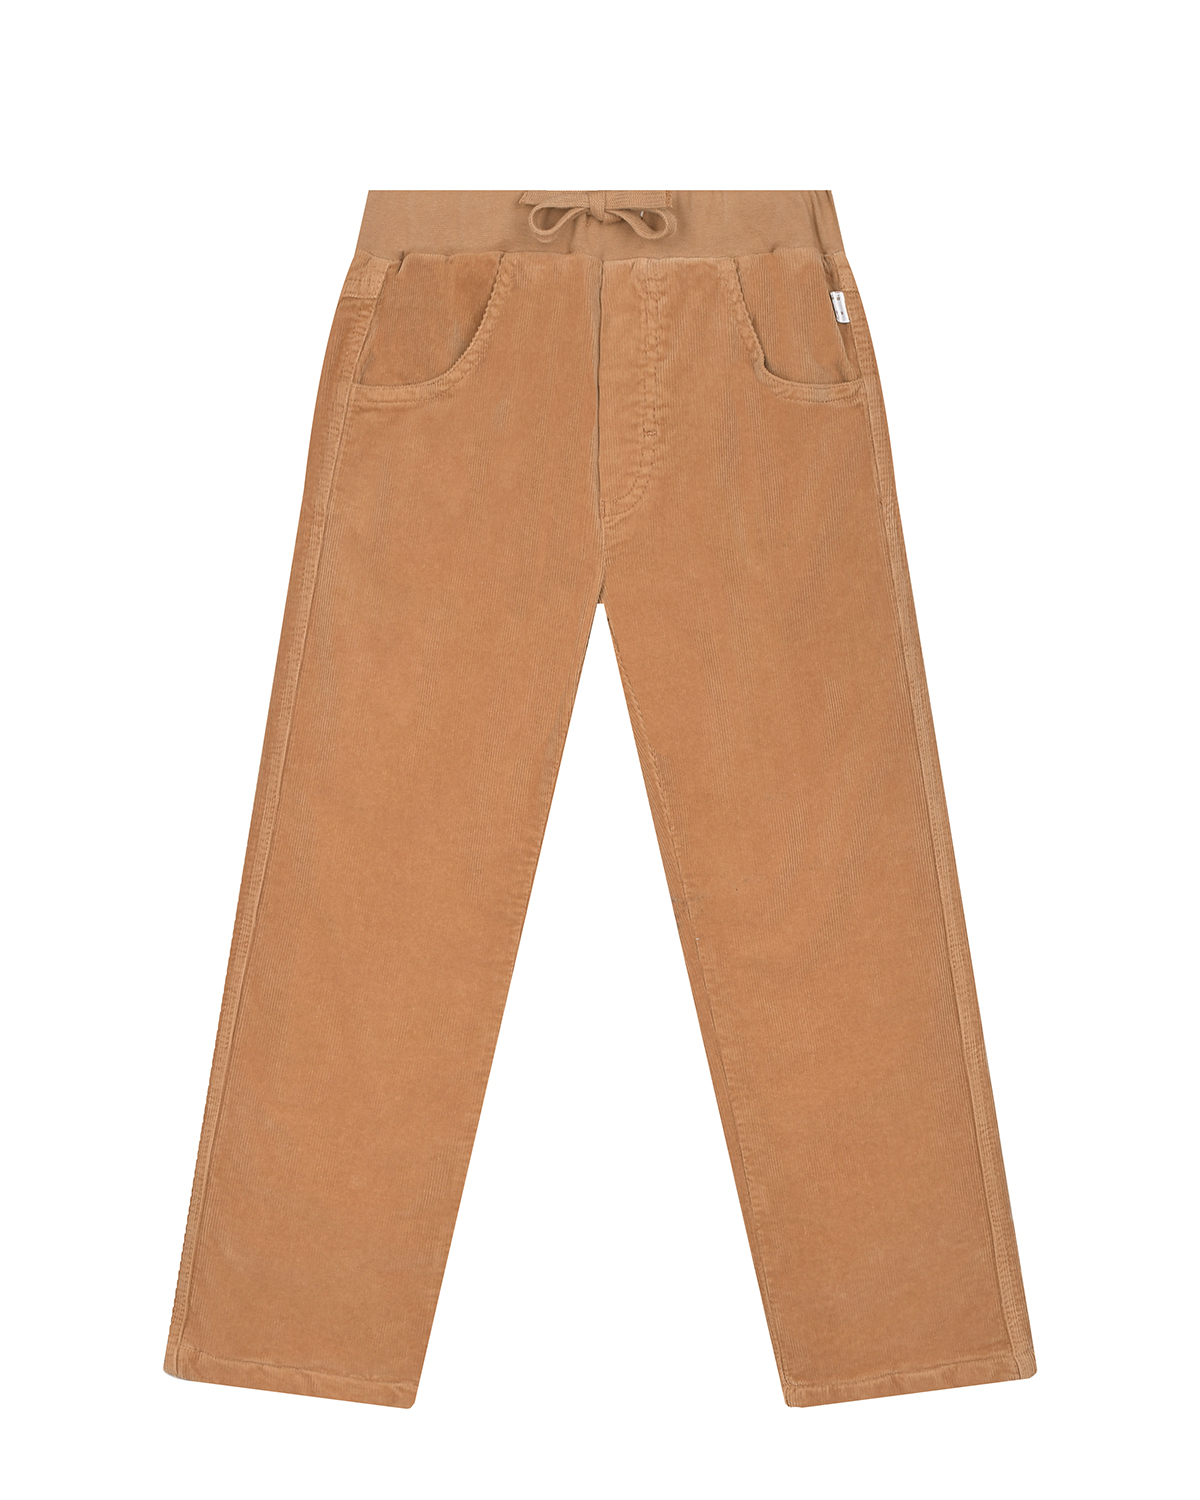 Велюровые брюки песочного цвета IL Gufo детские